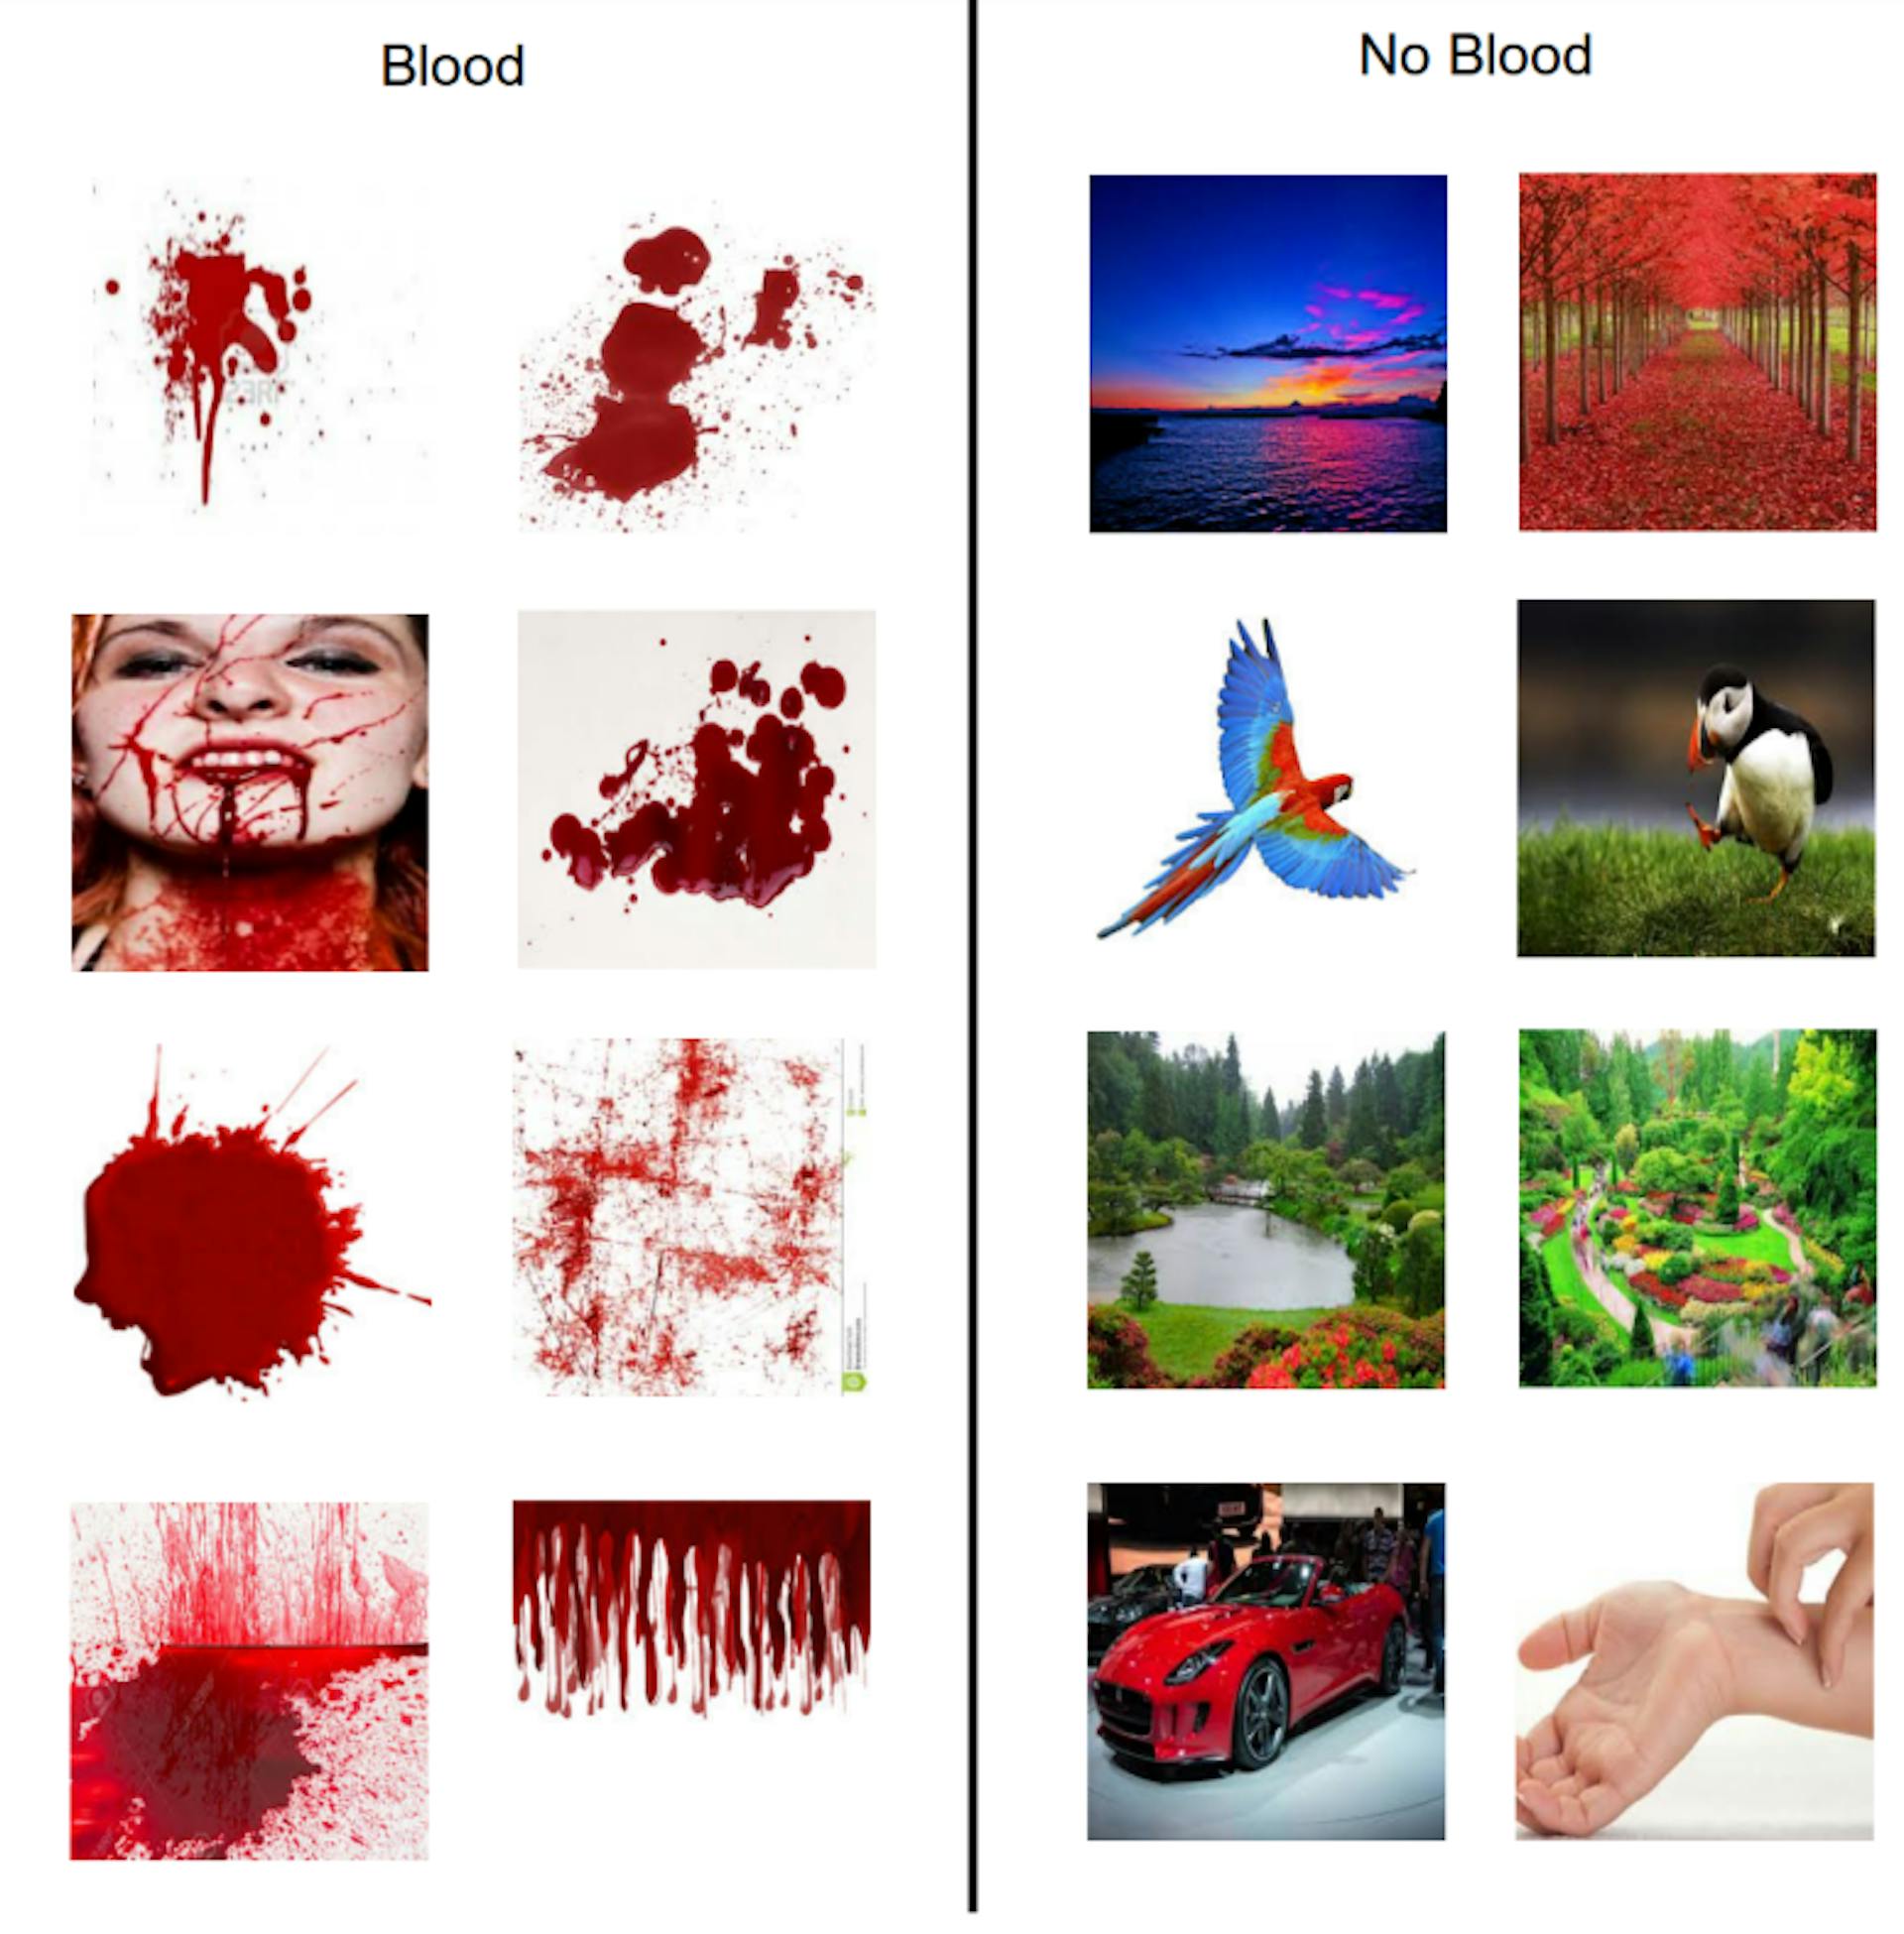 Şekil 3.3: Kanlı ve kansız modeller oluşturmak için Google'dan indirilen örnek görselleri gösteren şekil.